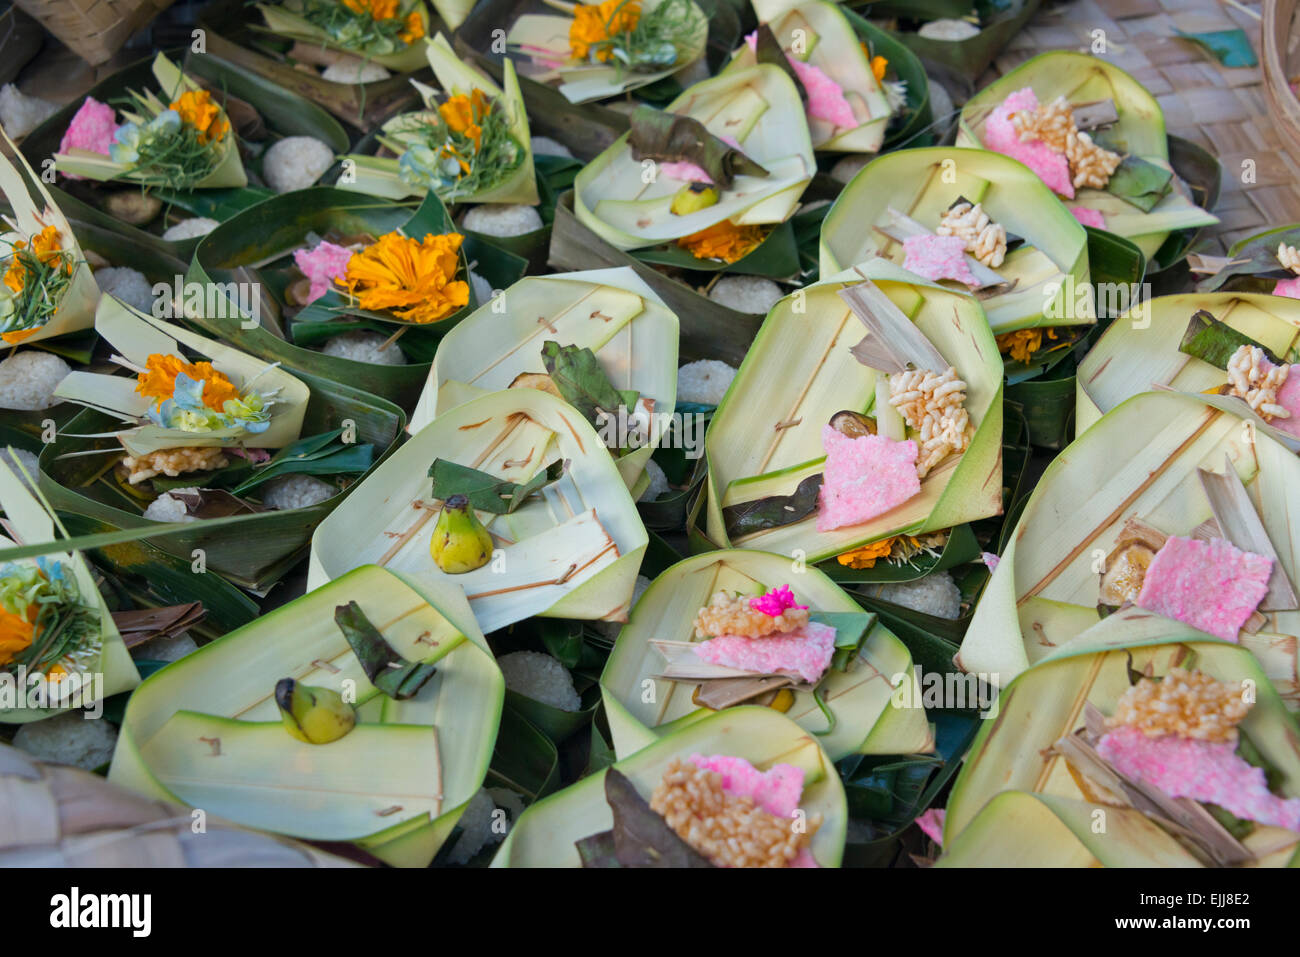 Fare offerta con foglie di palma, isola di Bali, Indonesia Foto Stock